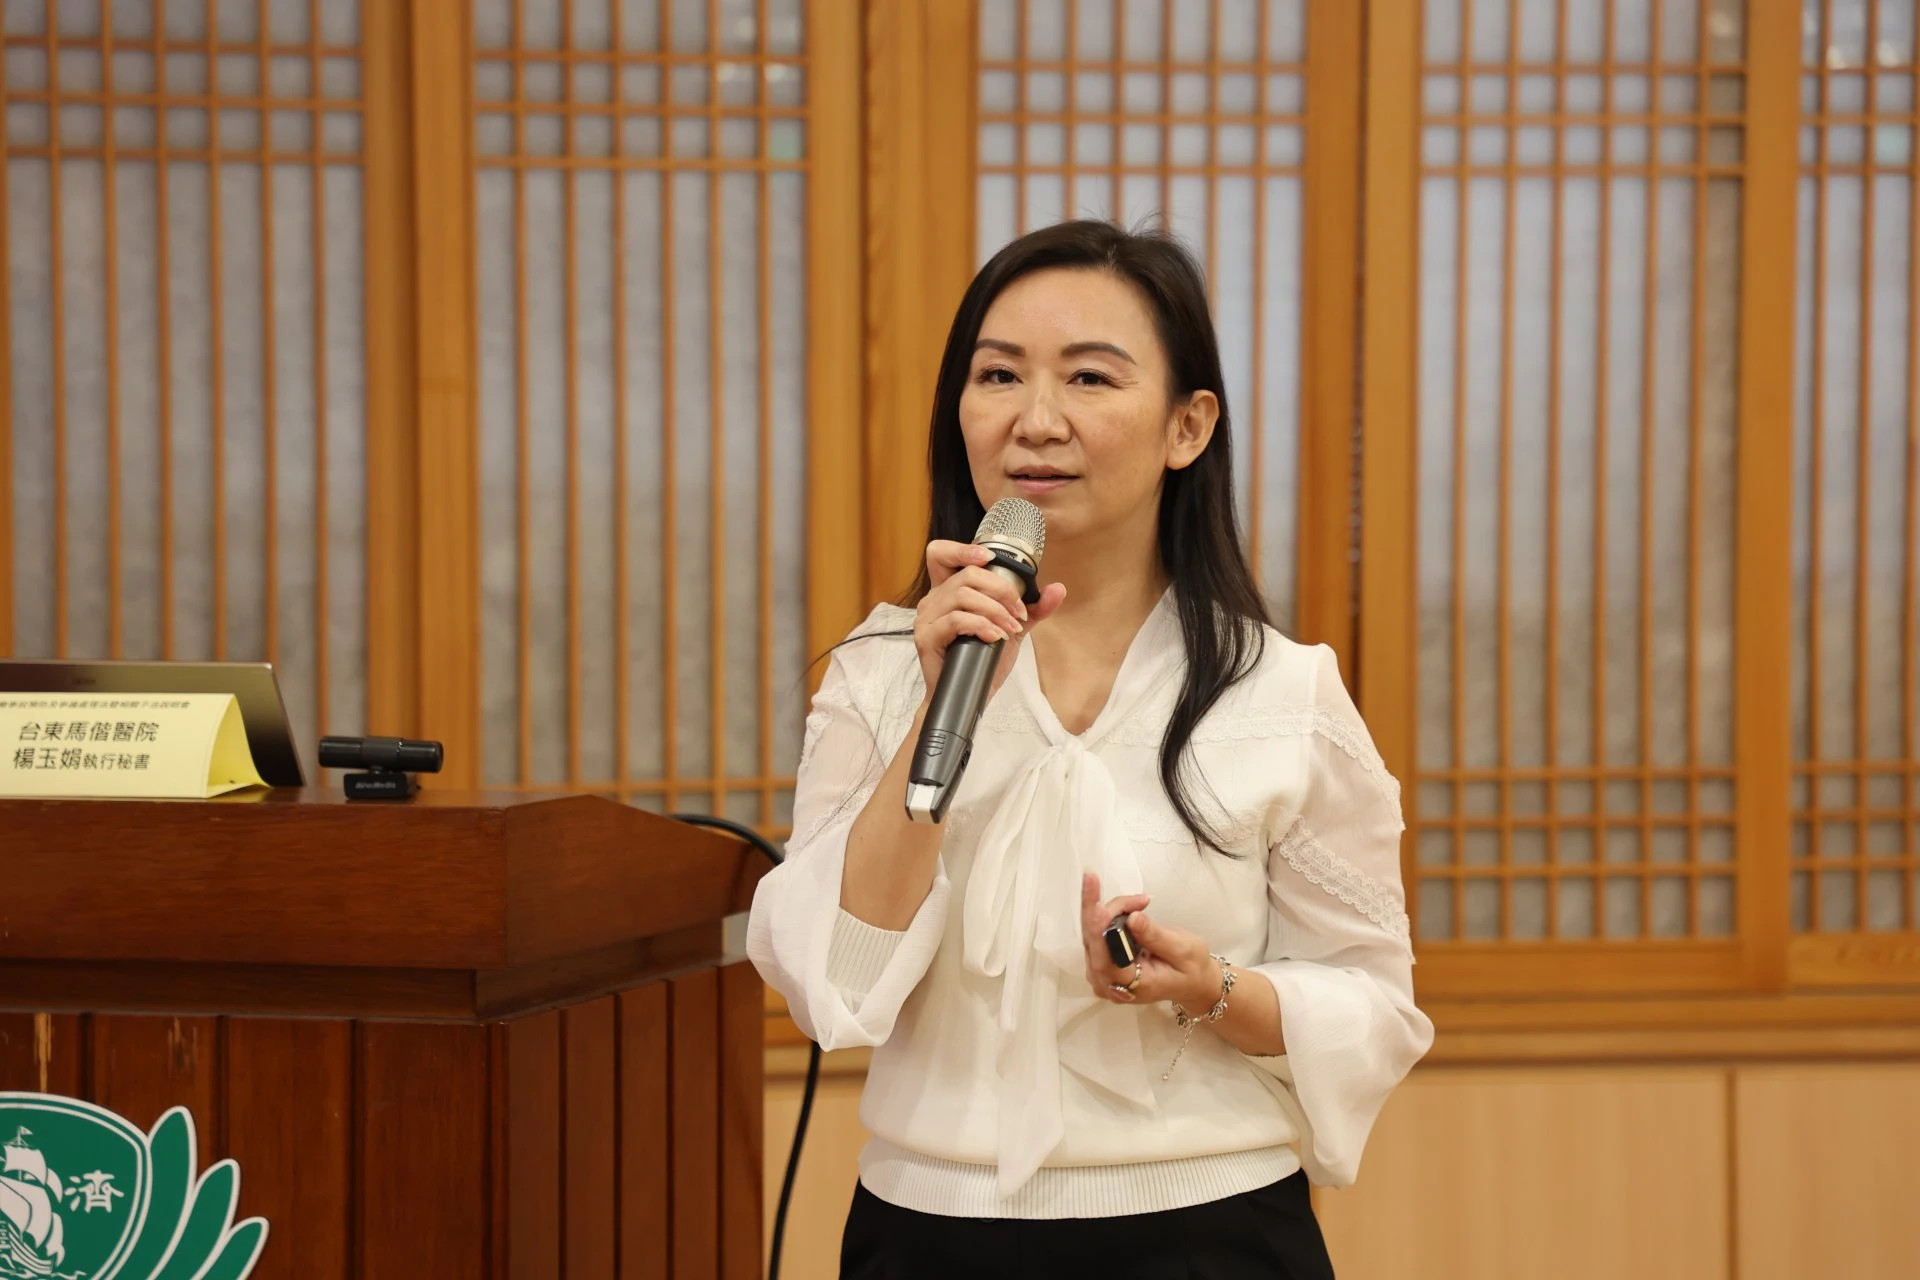 台東馬偕醫院執行秘書楊玉娟分享因應醫預法的措施與處理醫療爭議事件的實務經驗。